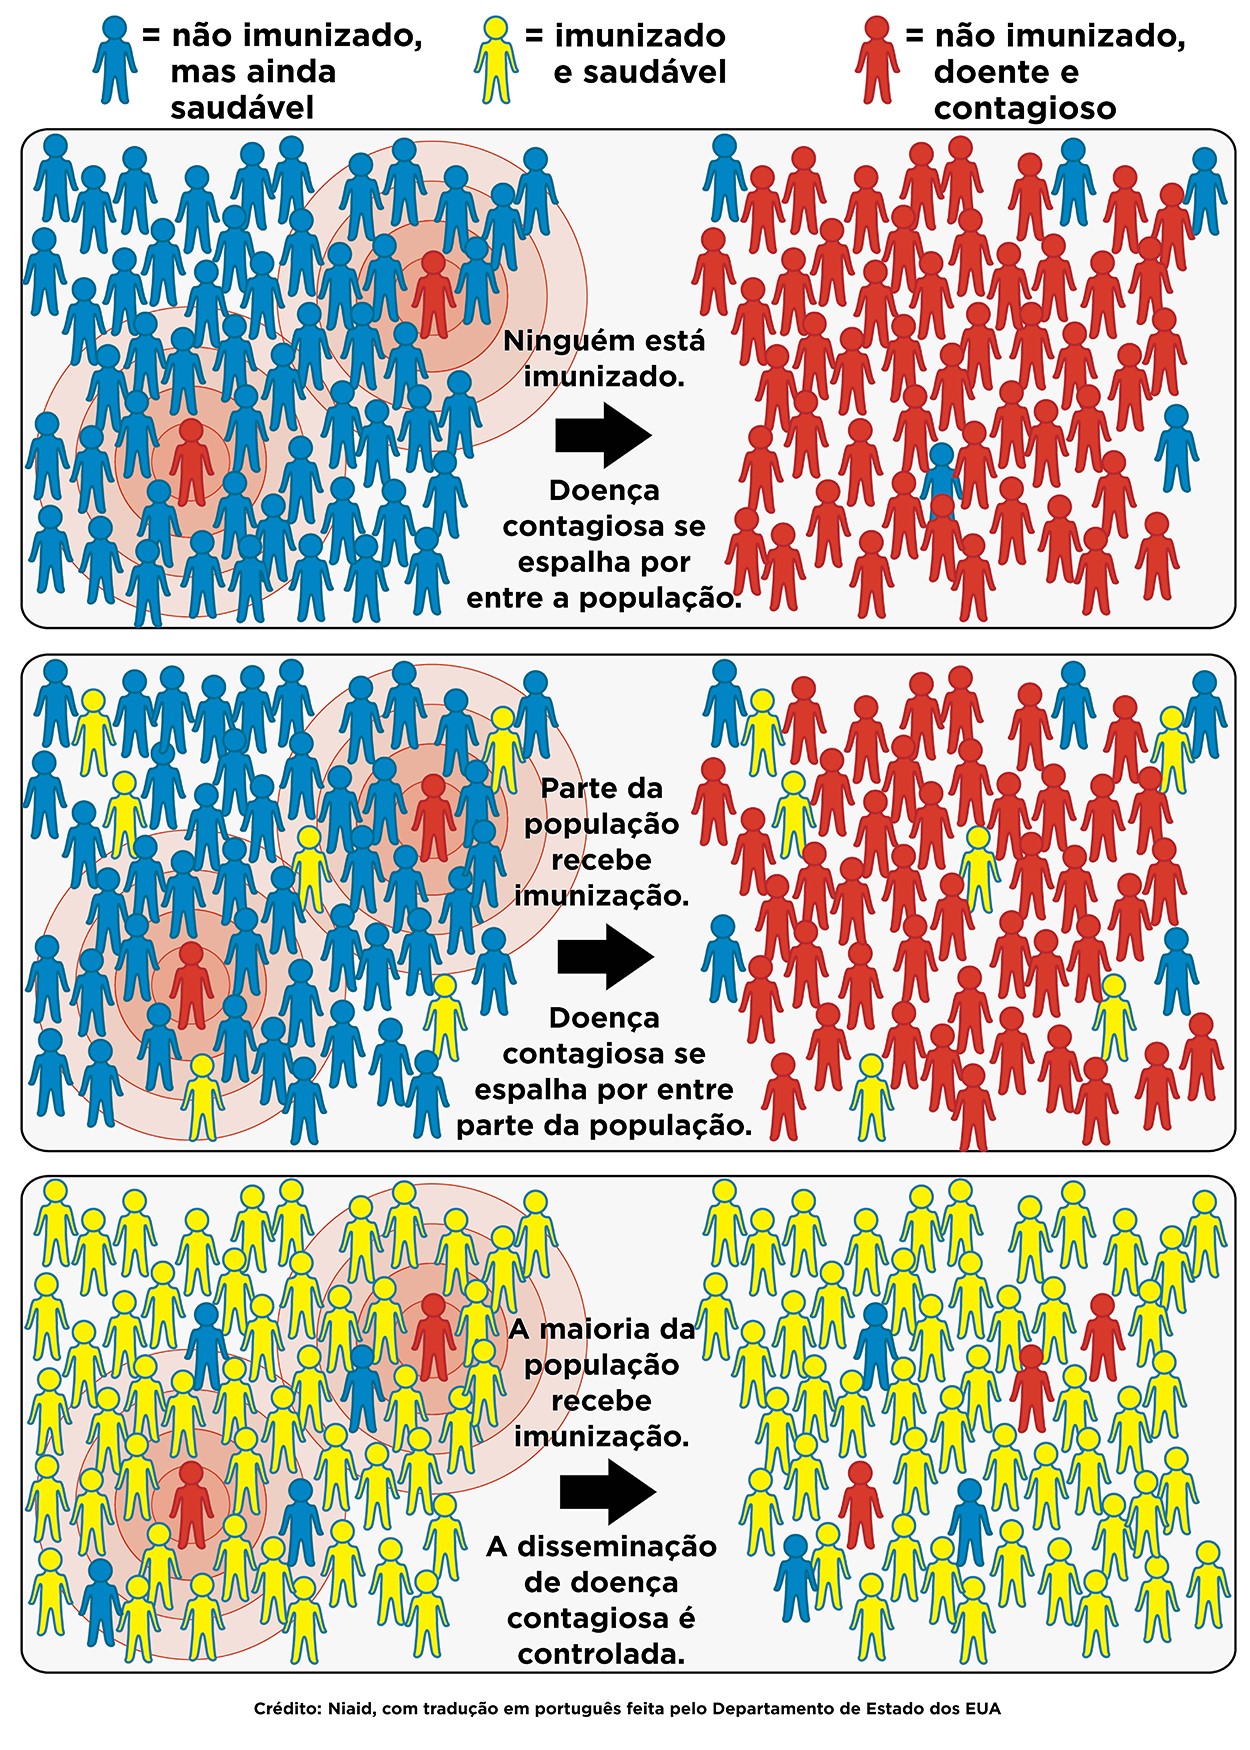 Imunidade coletiva ou efeito rebanho: importância da vacinação para controlar a disseminação de doenças